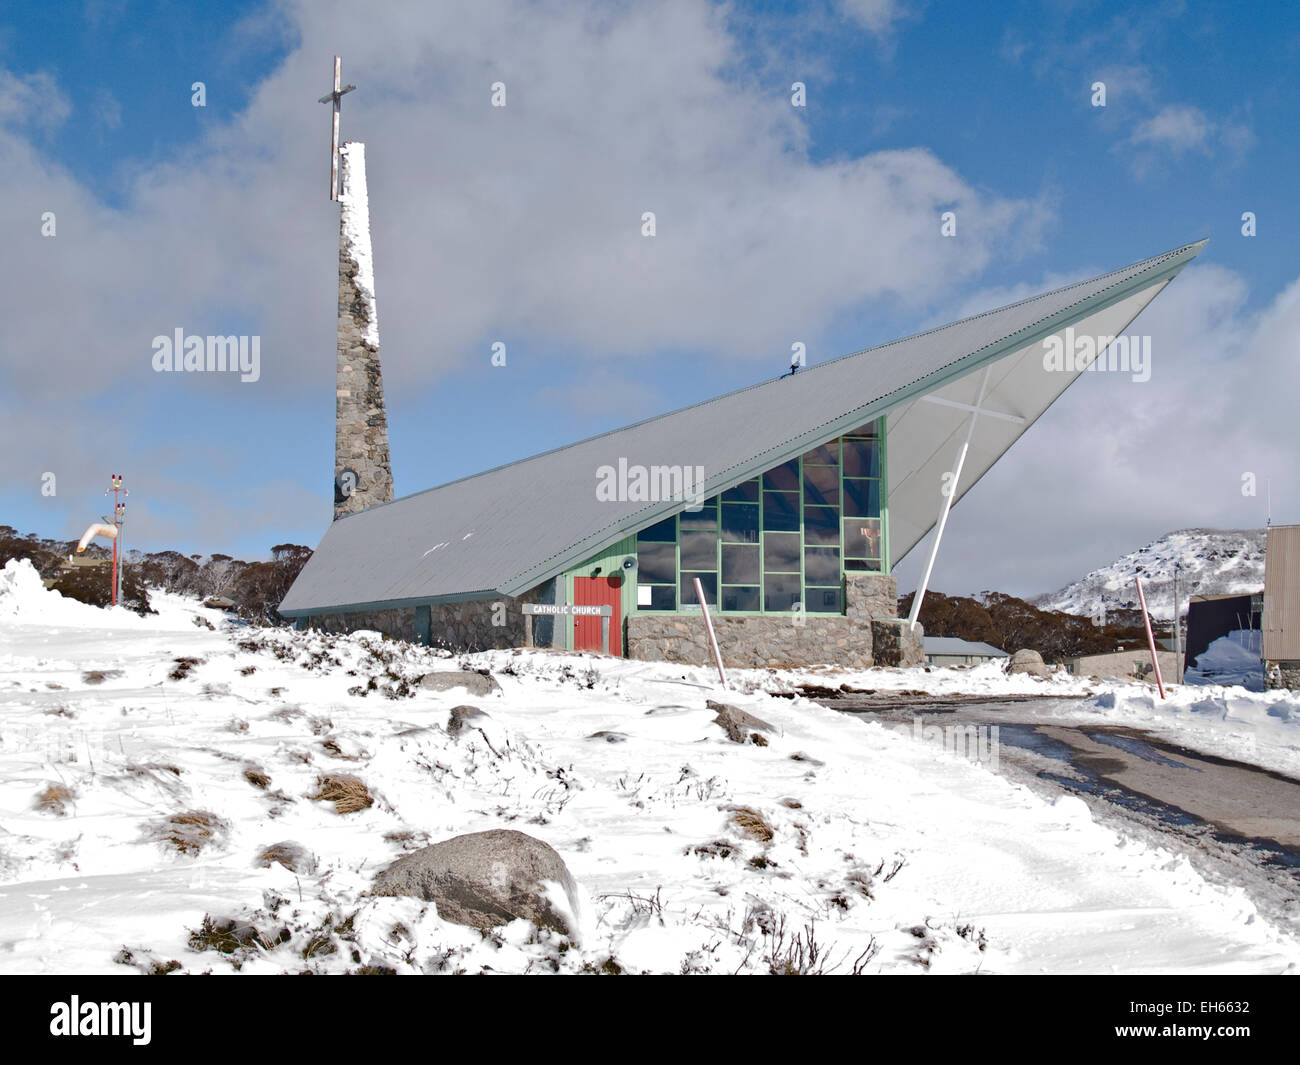 Australia: Roman Catholic church, Perisher Valley, Snowy Mountains, NSW Stock Photo